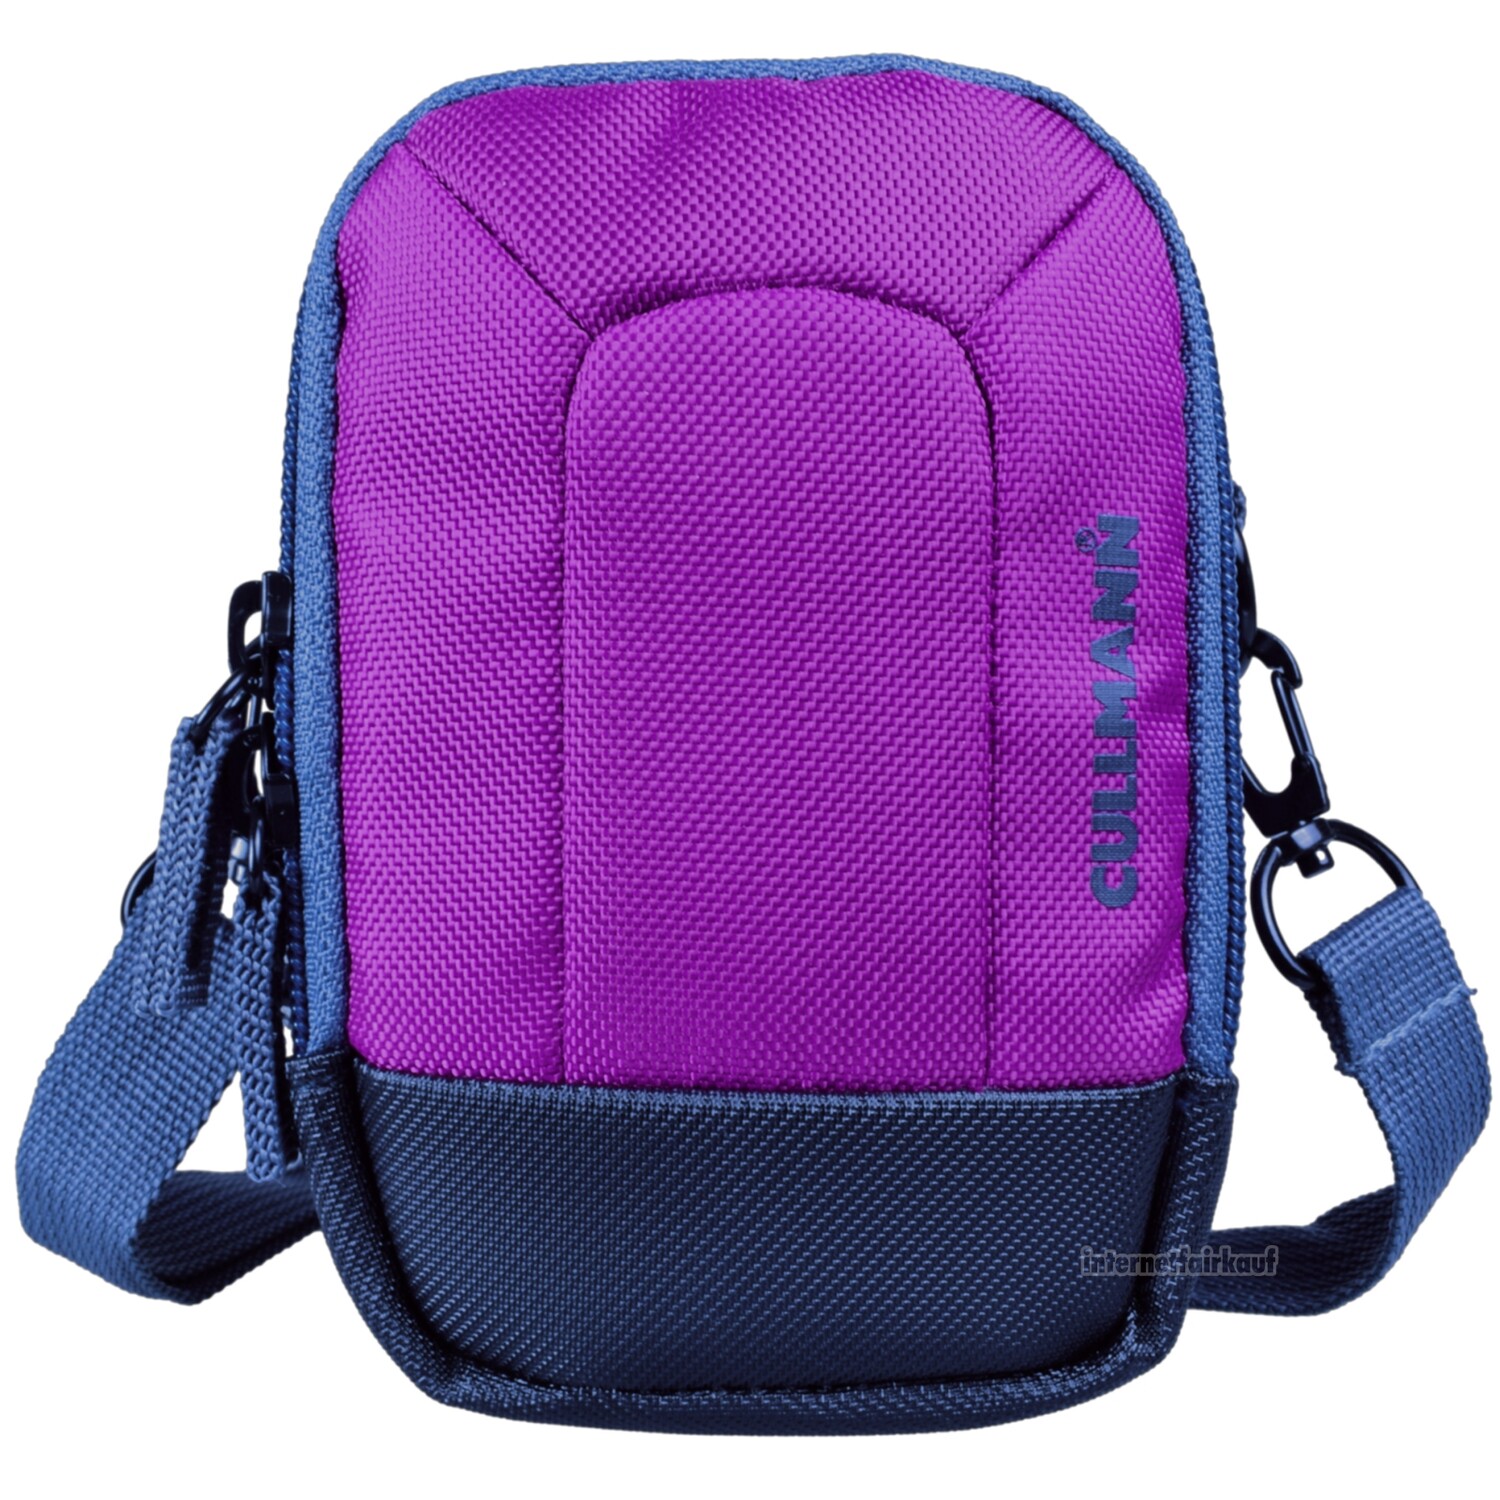 Kameratasche purple passend für Fujifilm X70 - Fototasche